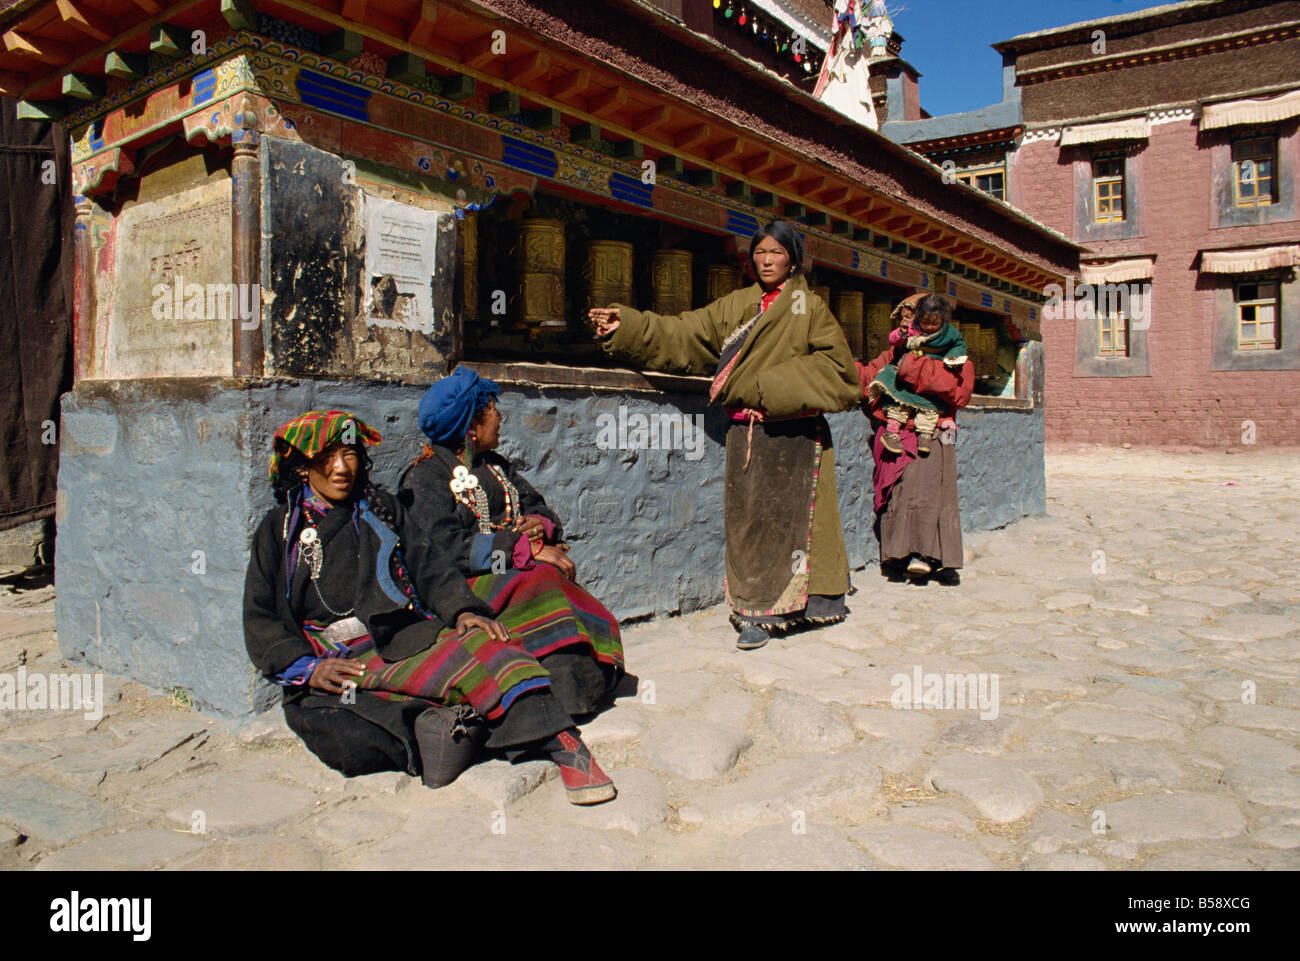 Prayer wheels Sakya Monastery Tibet China Asia Stock Photo